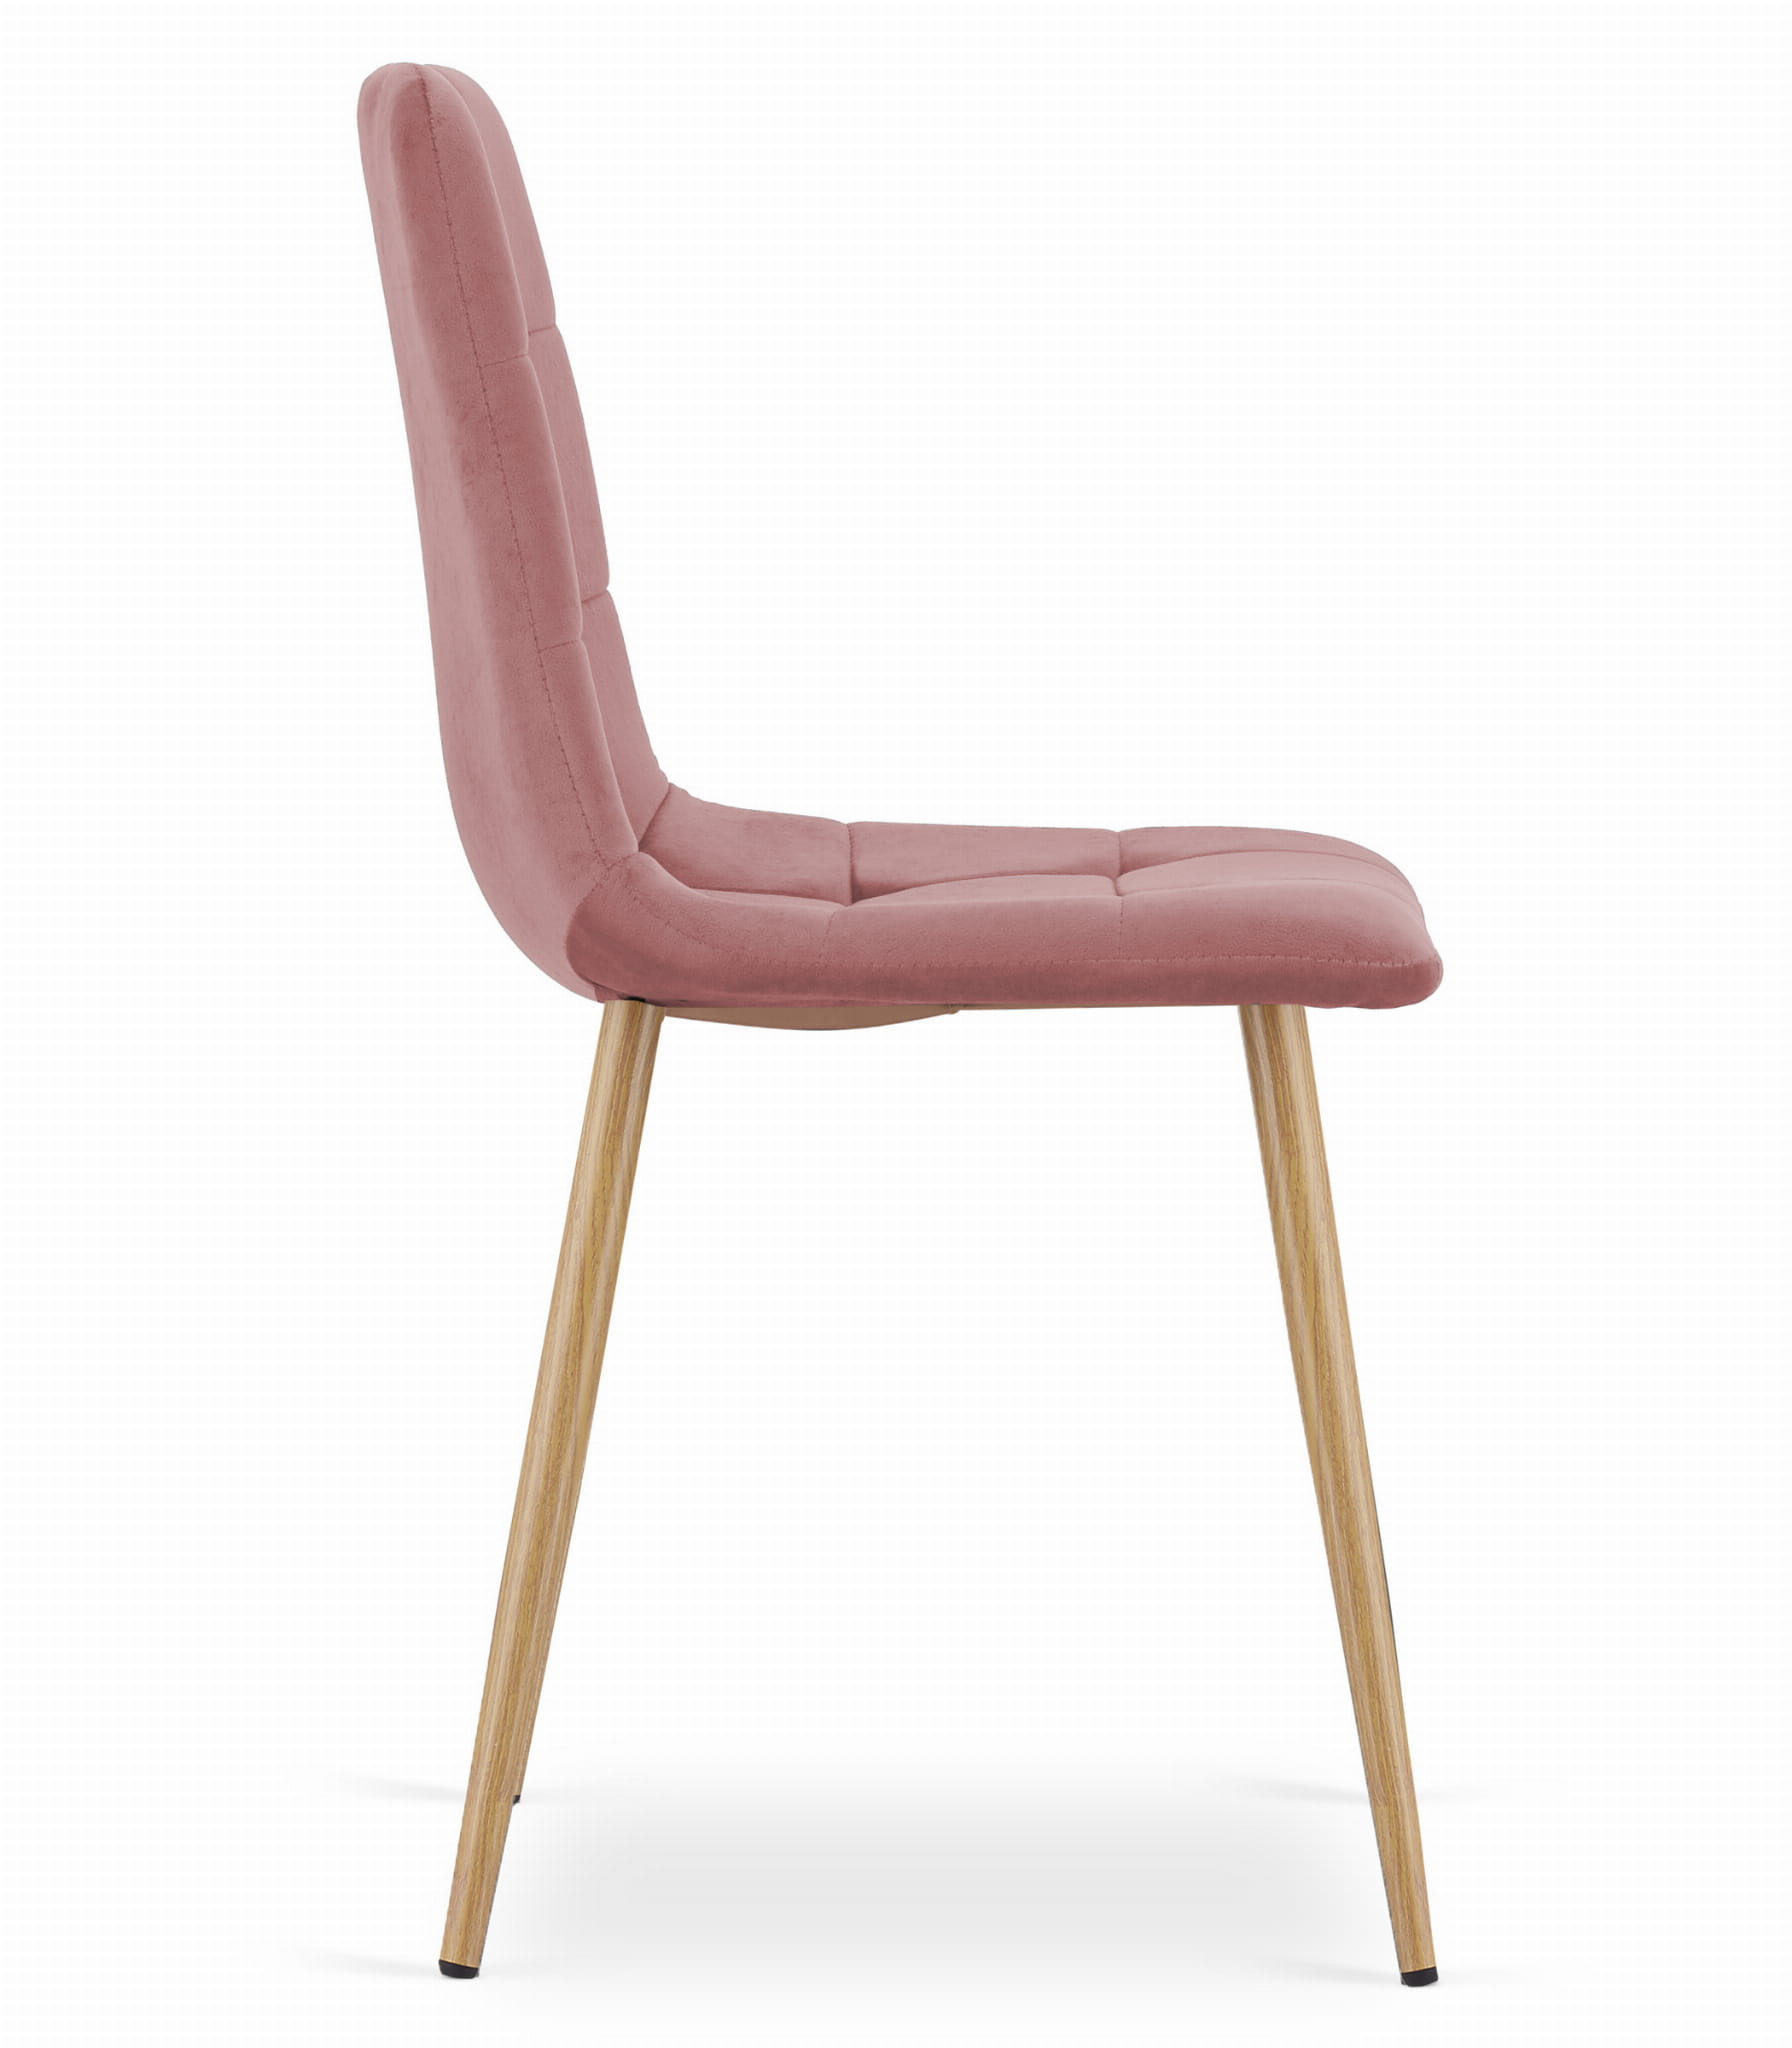 Set tří jídelních židlí KARA - růžová (hnědé nohy) 3ks